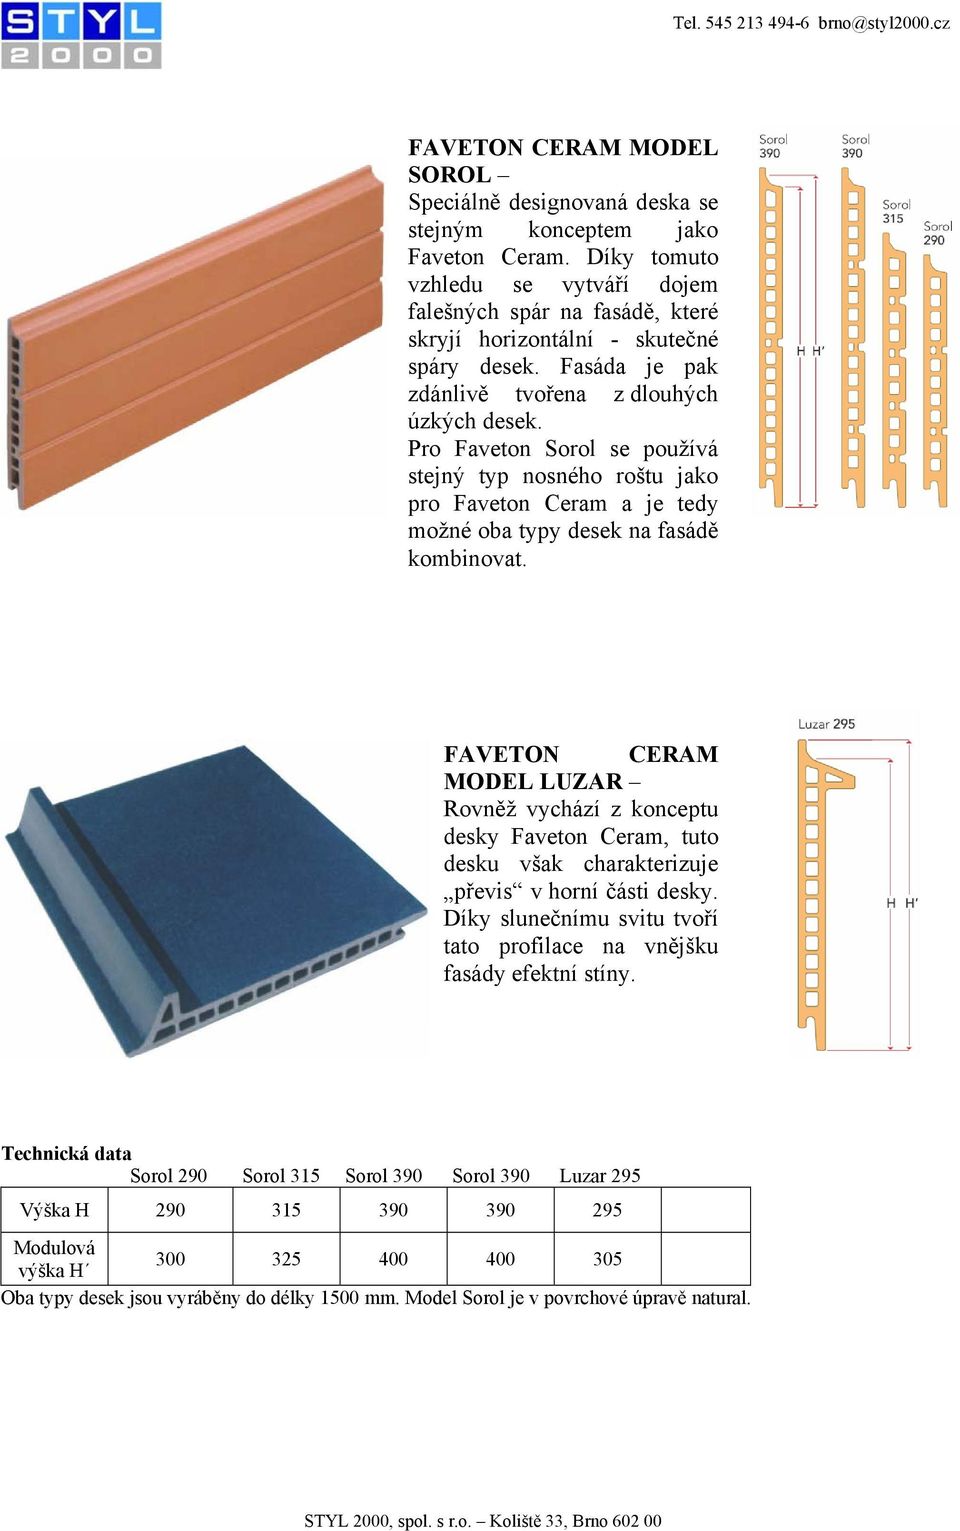 Pro Faveton Sorol se používá stejný typ nosného roštu jako pro Faveton Ceram a je tedy možné oba typy desek na fasádě kombinovat.